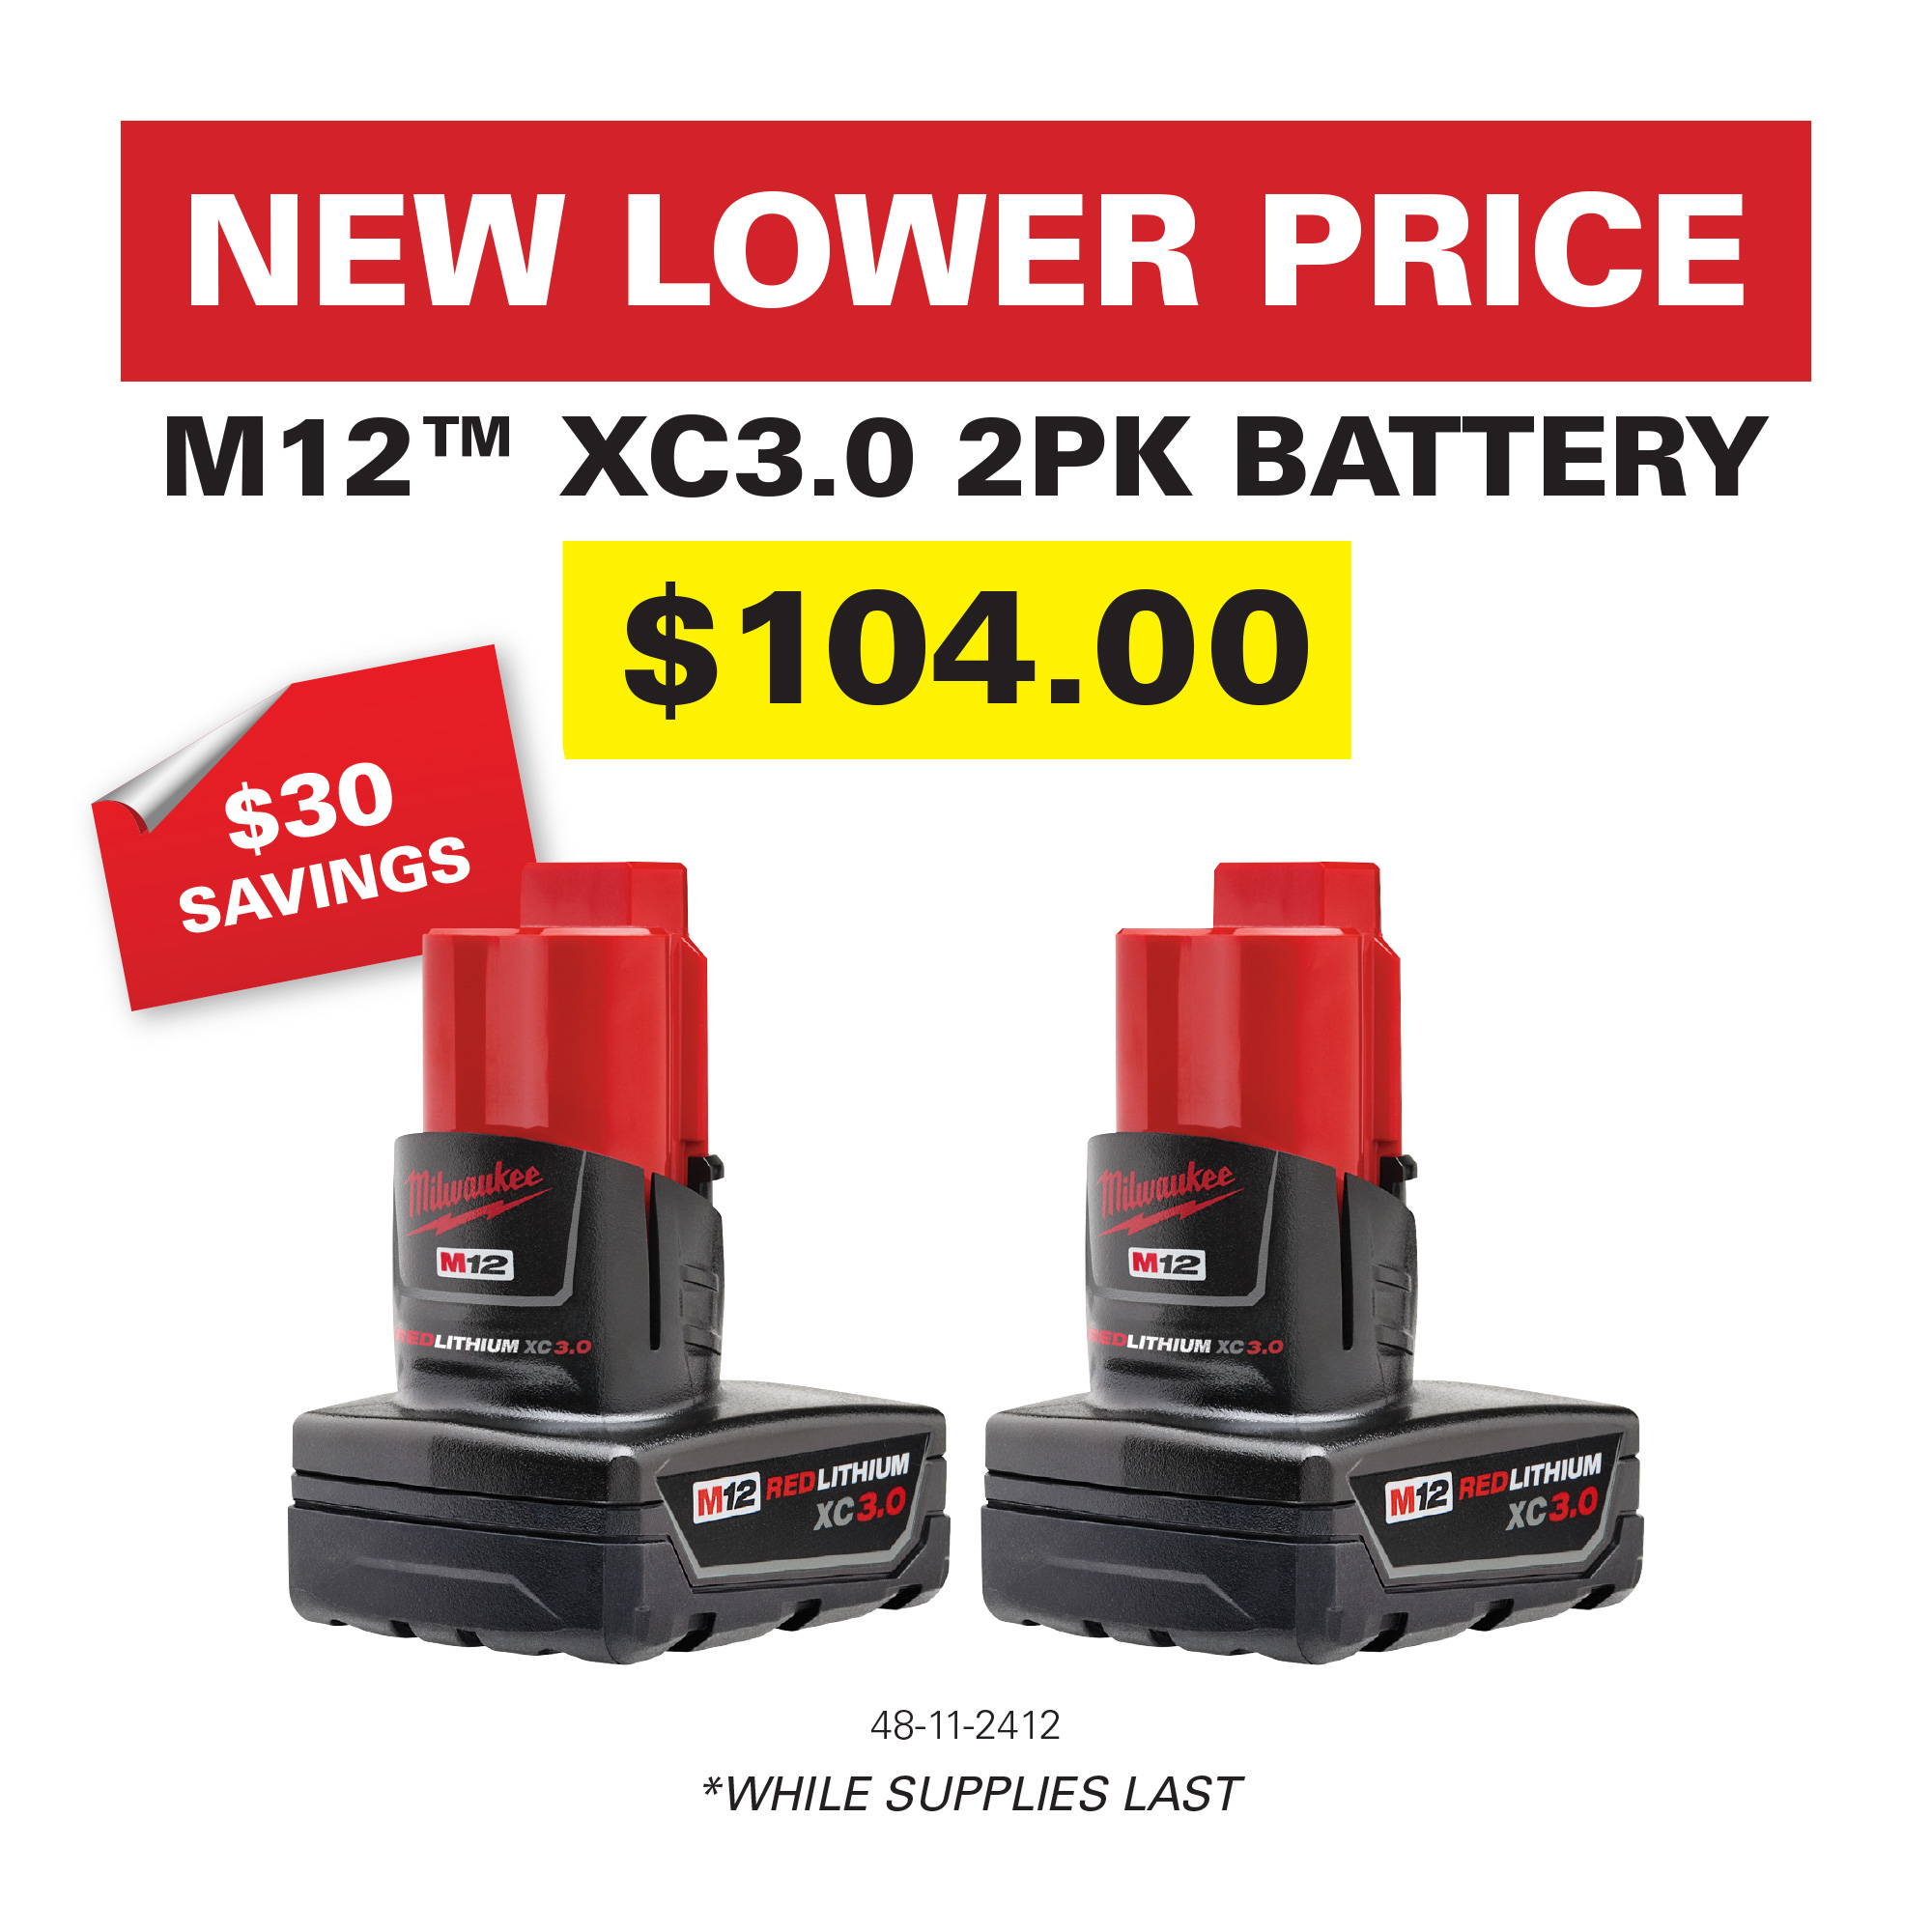 Lower Price Milwaukee M12 XC3.0 2pk Battery